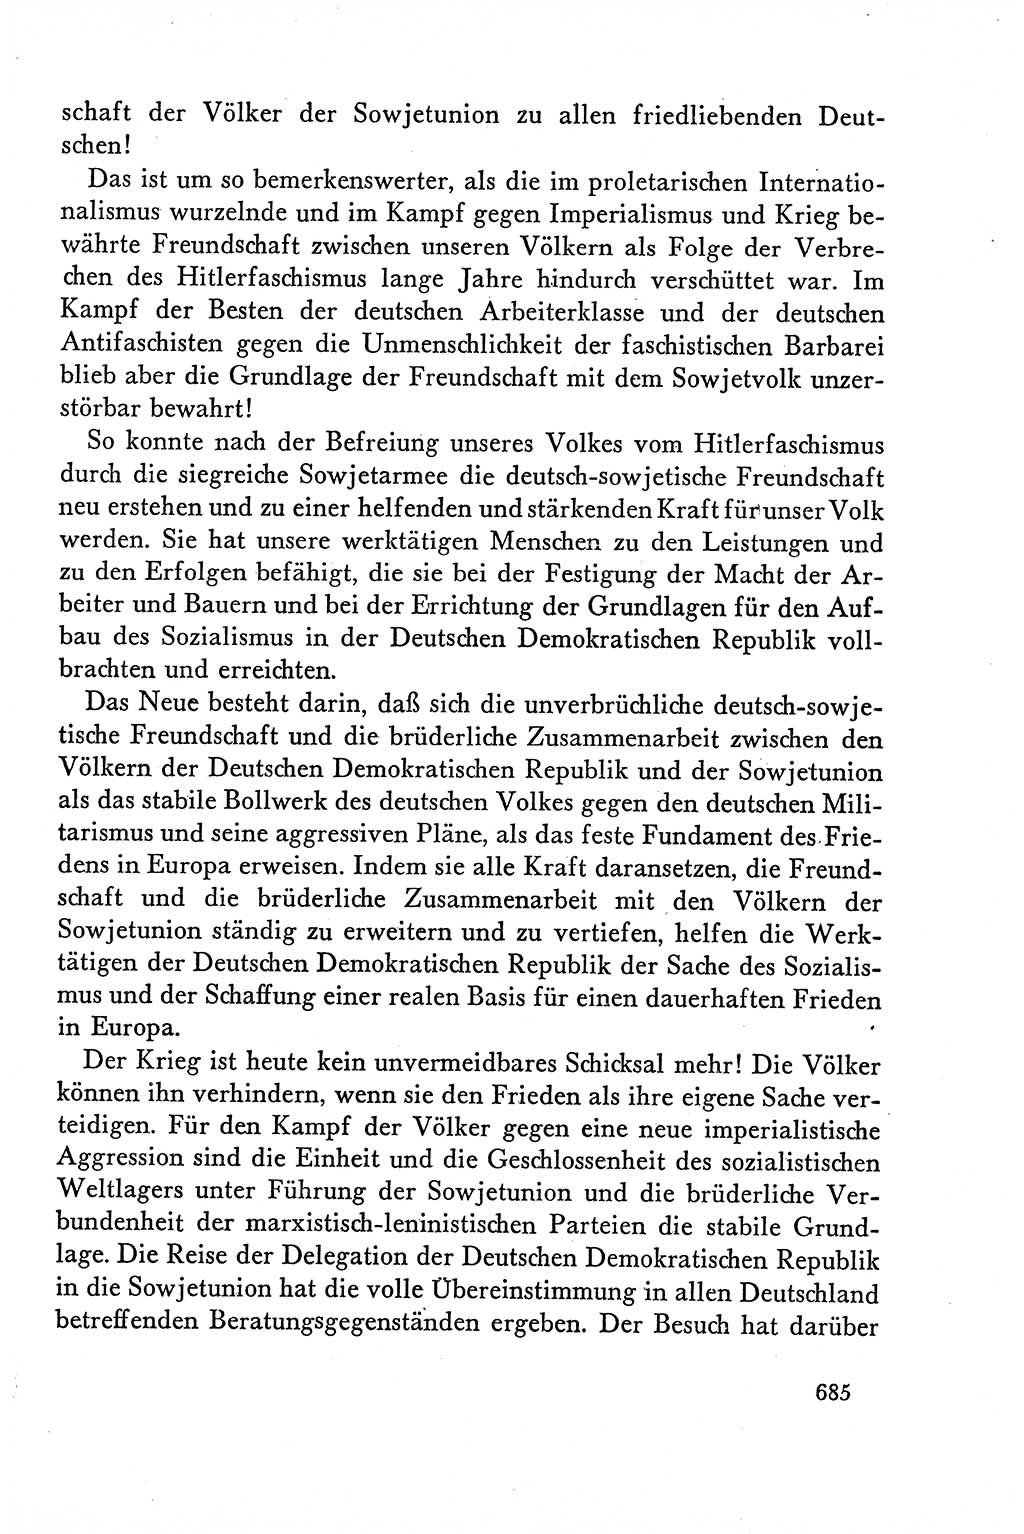 Dokumente der Sozialistischen Einheitspartei Deutschlands (SED) [Deutsche Demokratische Republik (DDR)] 1958-1959, Seite 685 (Dok. SED DDR 1958-1959, S. 685)